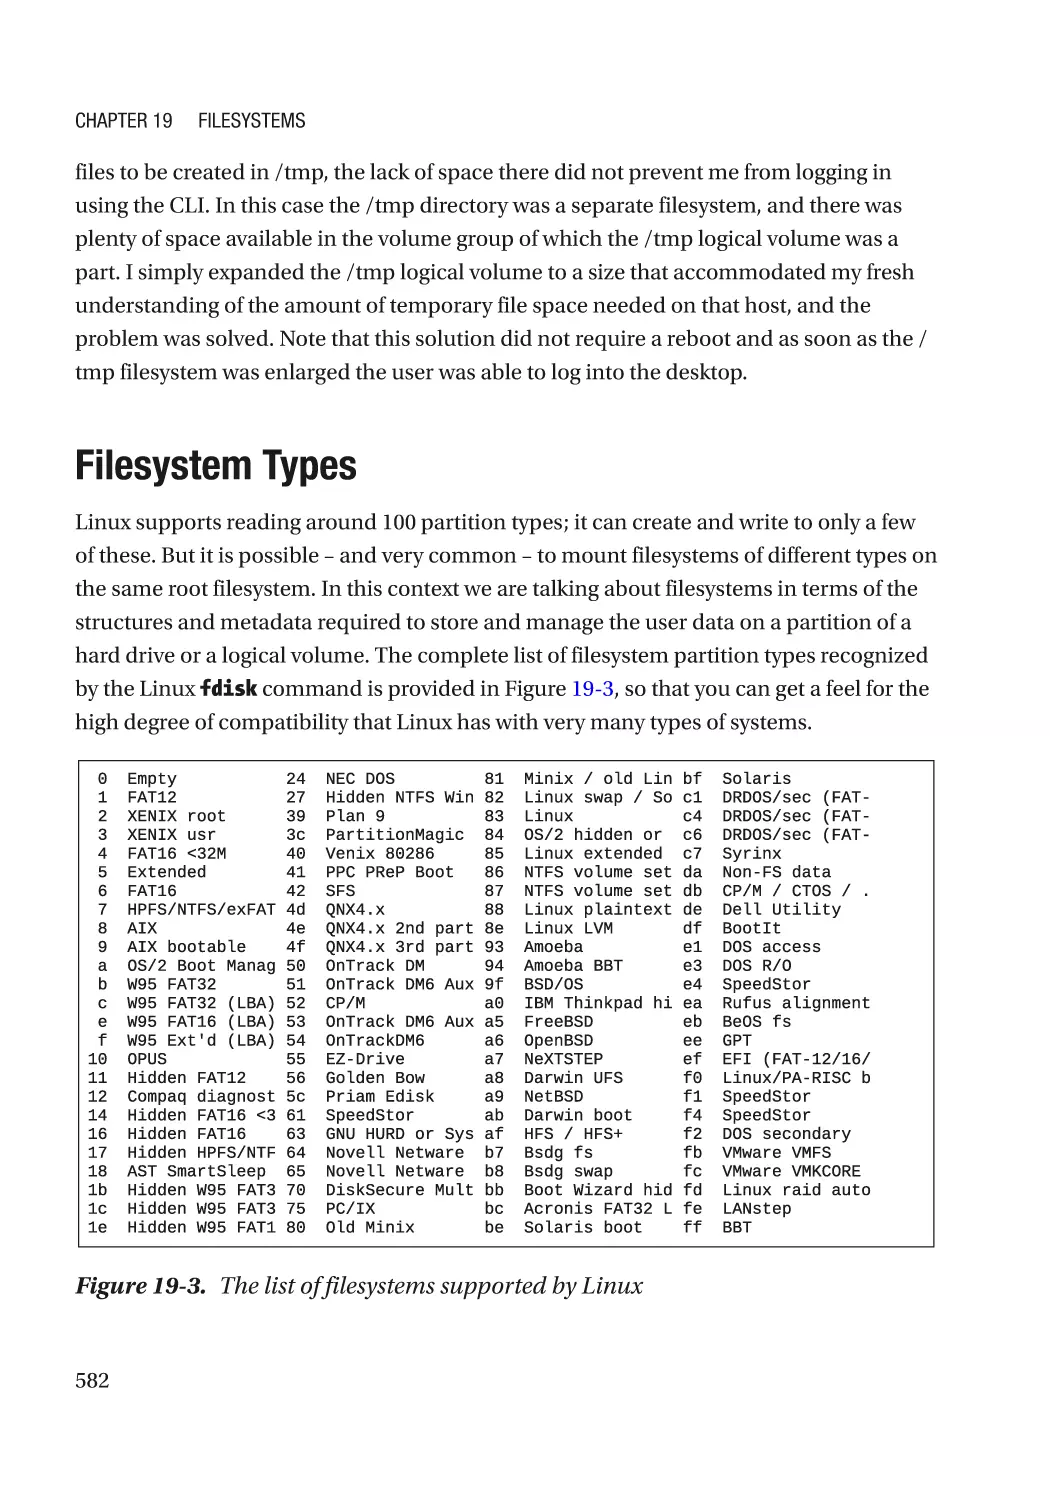 Filesystem Types